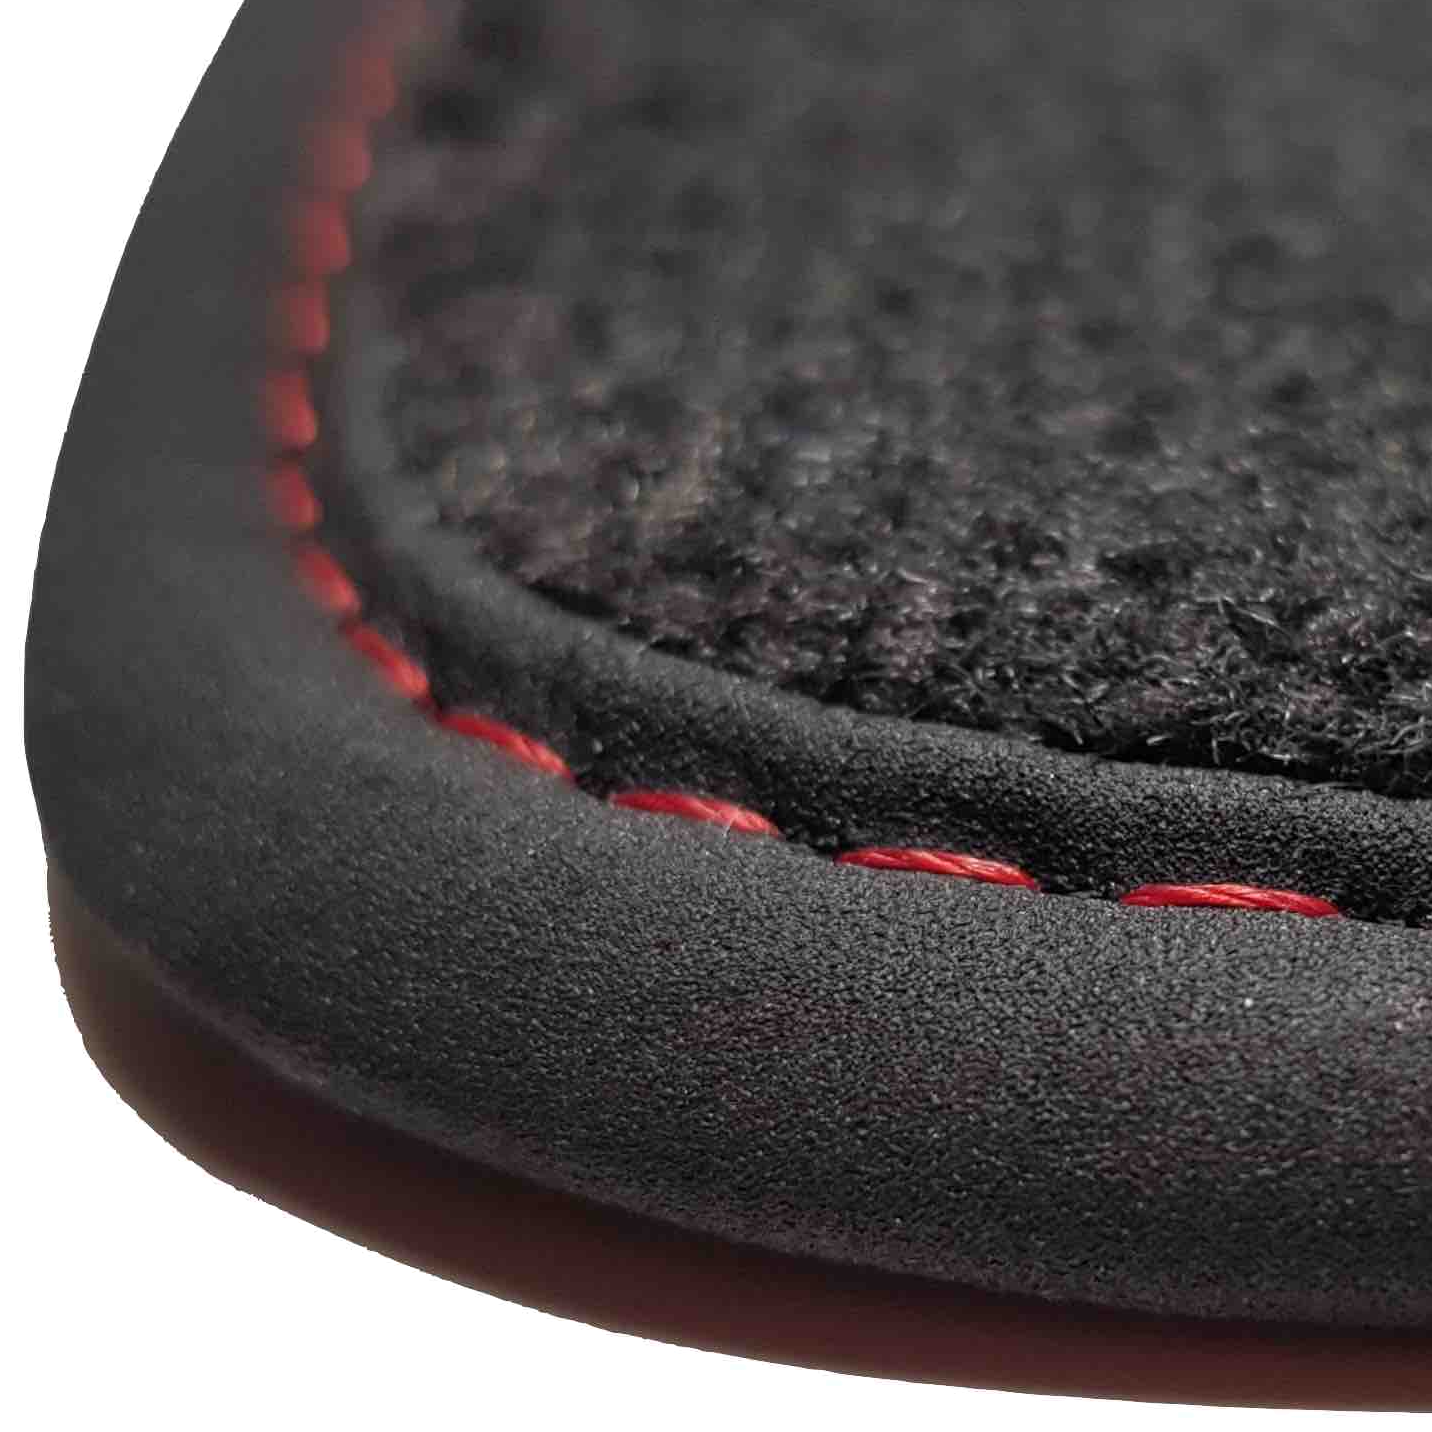 tapis auto Modus coffre Renault prix discount livraison gratuite moquette noir bordure rouge